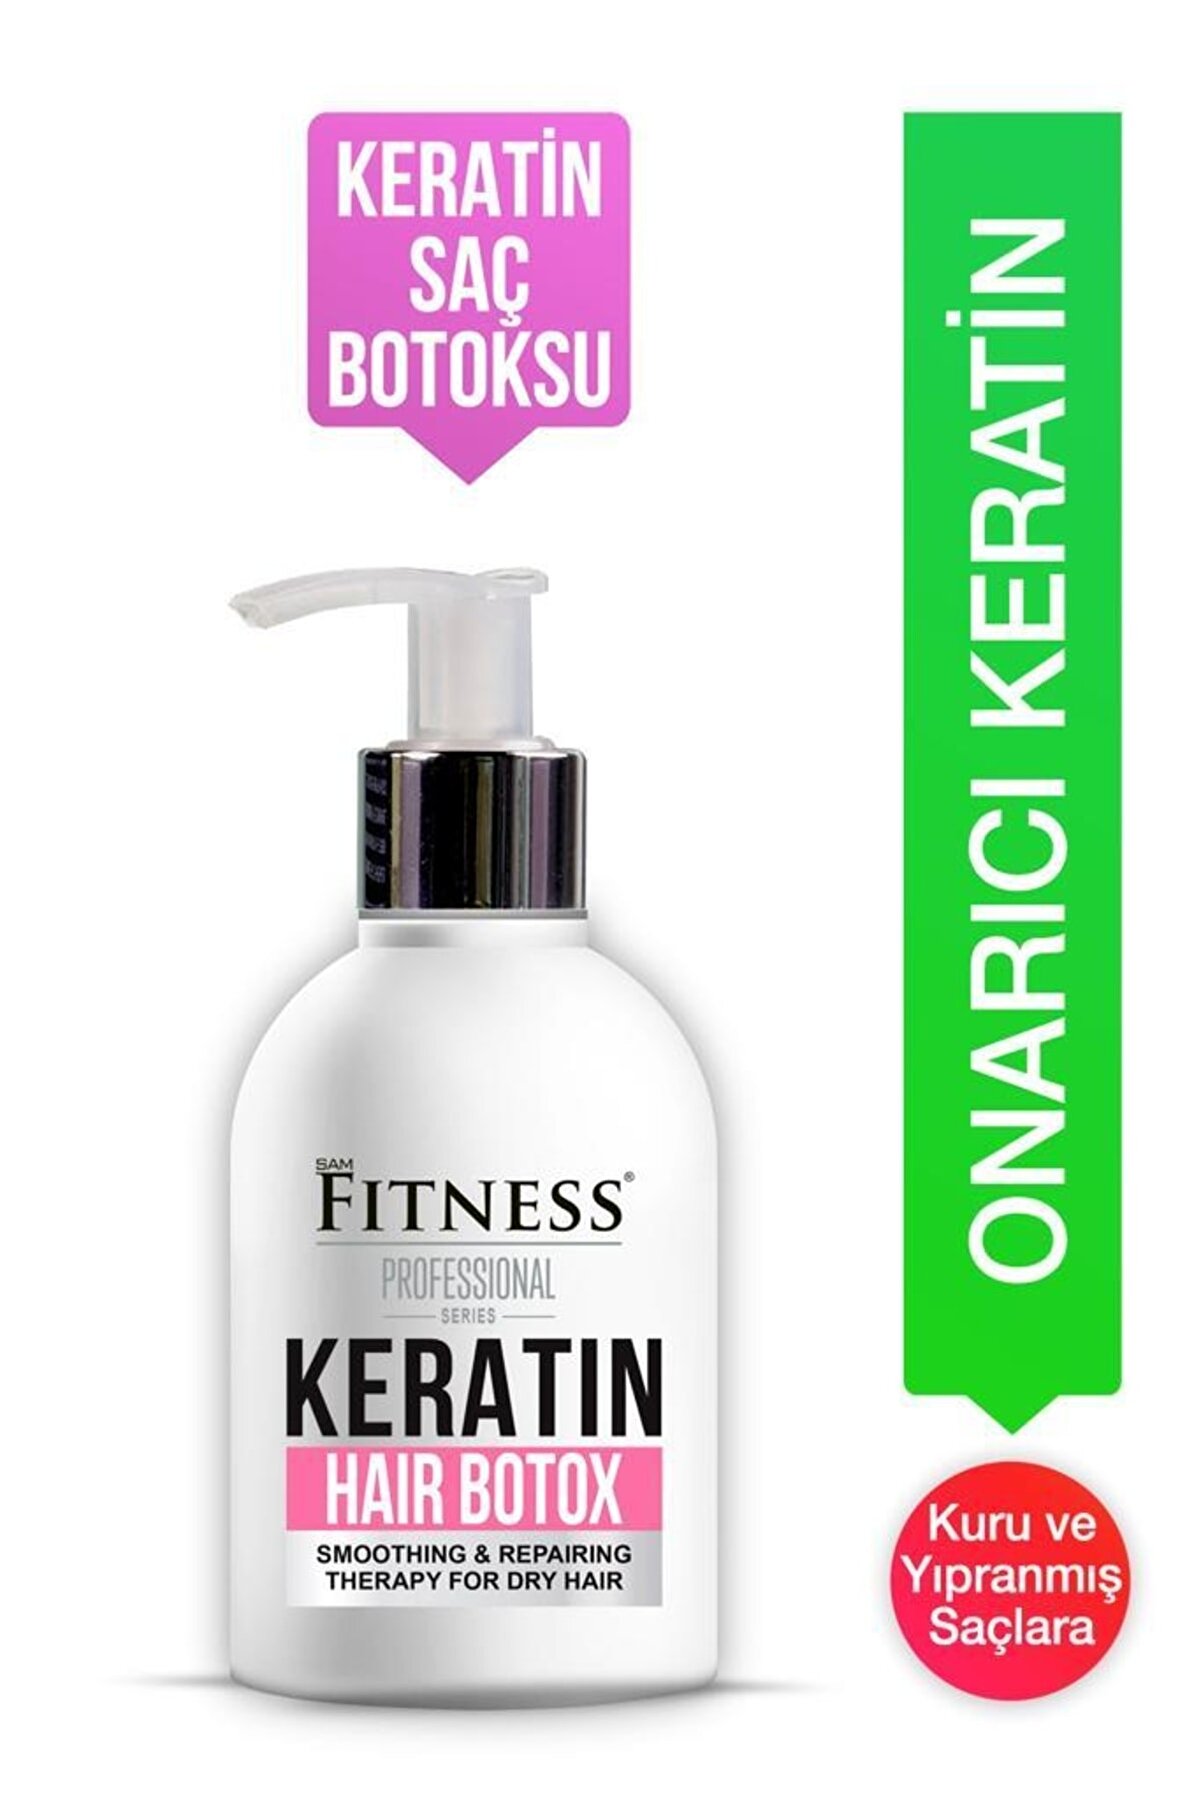 Fitness Professional Keratin Onarıcı Yıpranmış Kuru Saç Botoksu Hair Botox 250ml